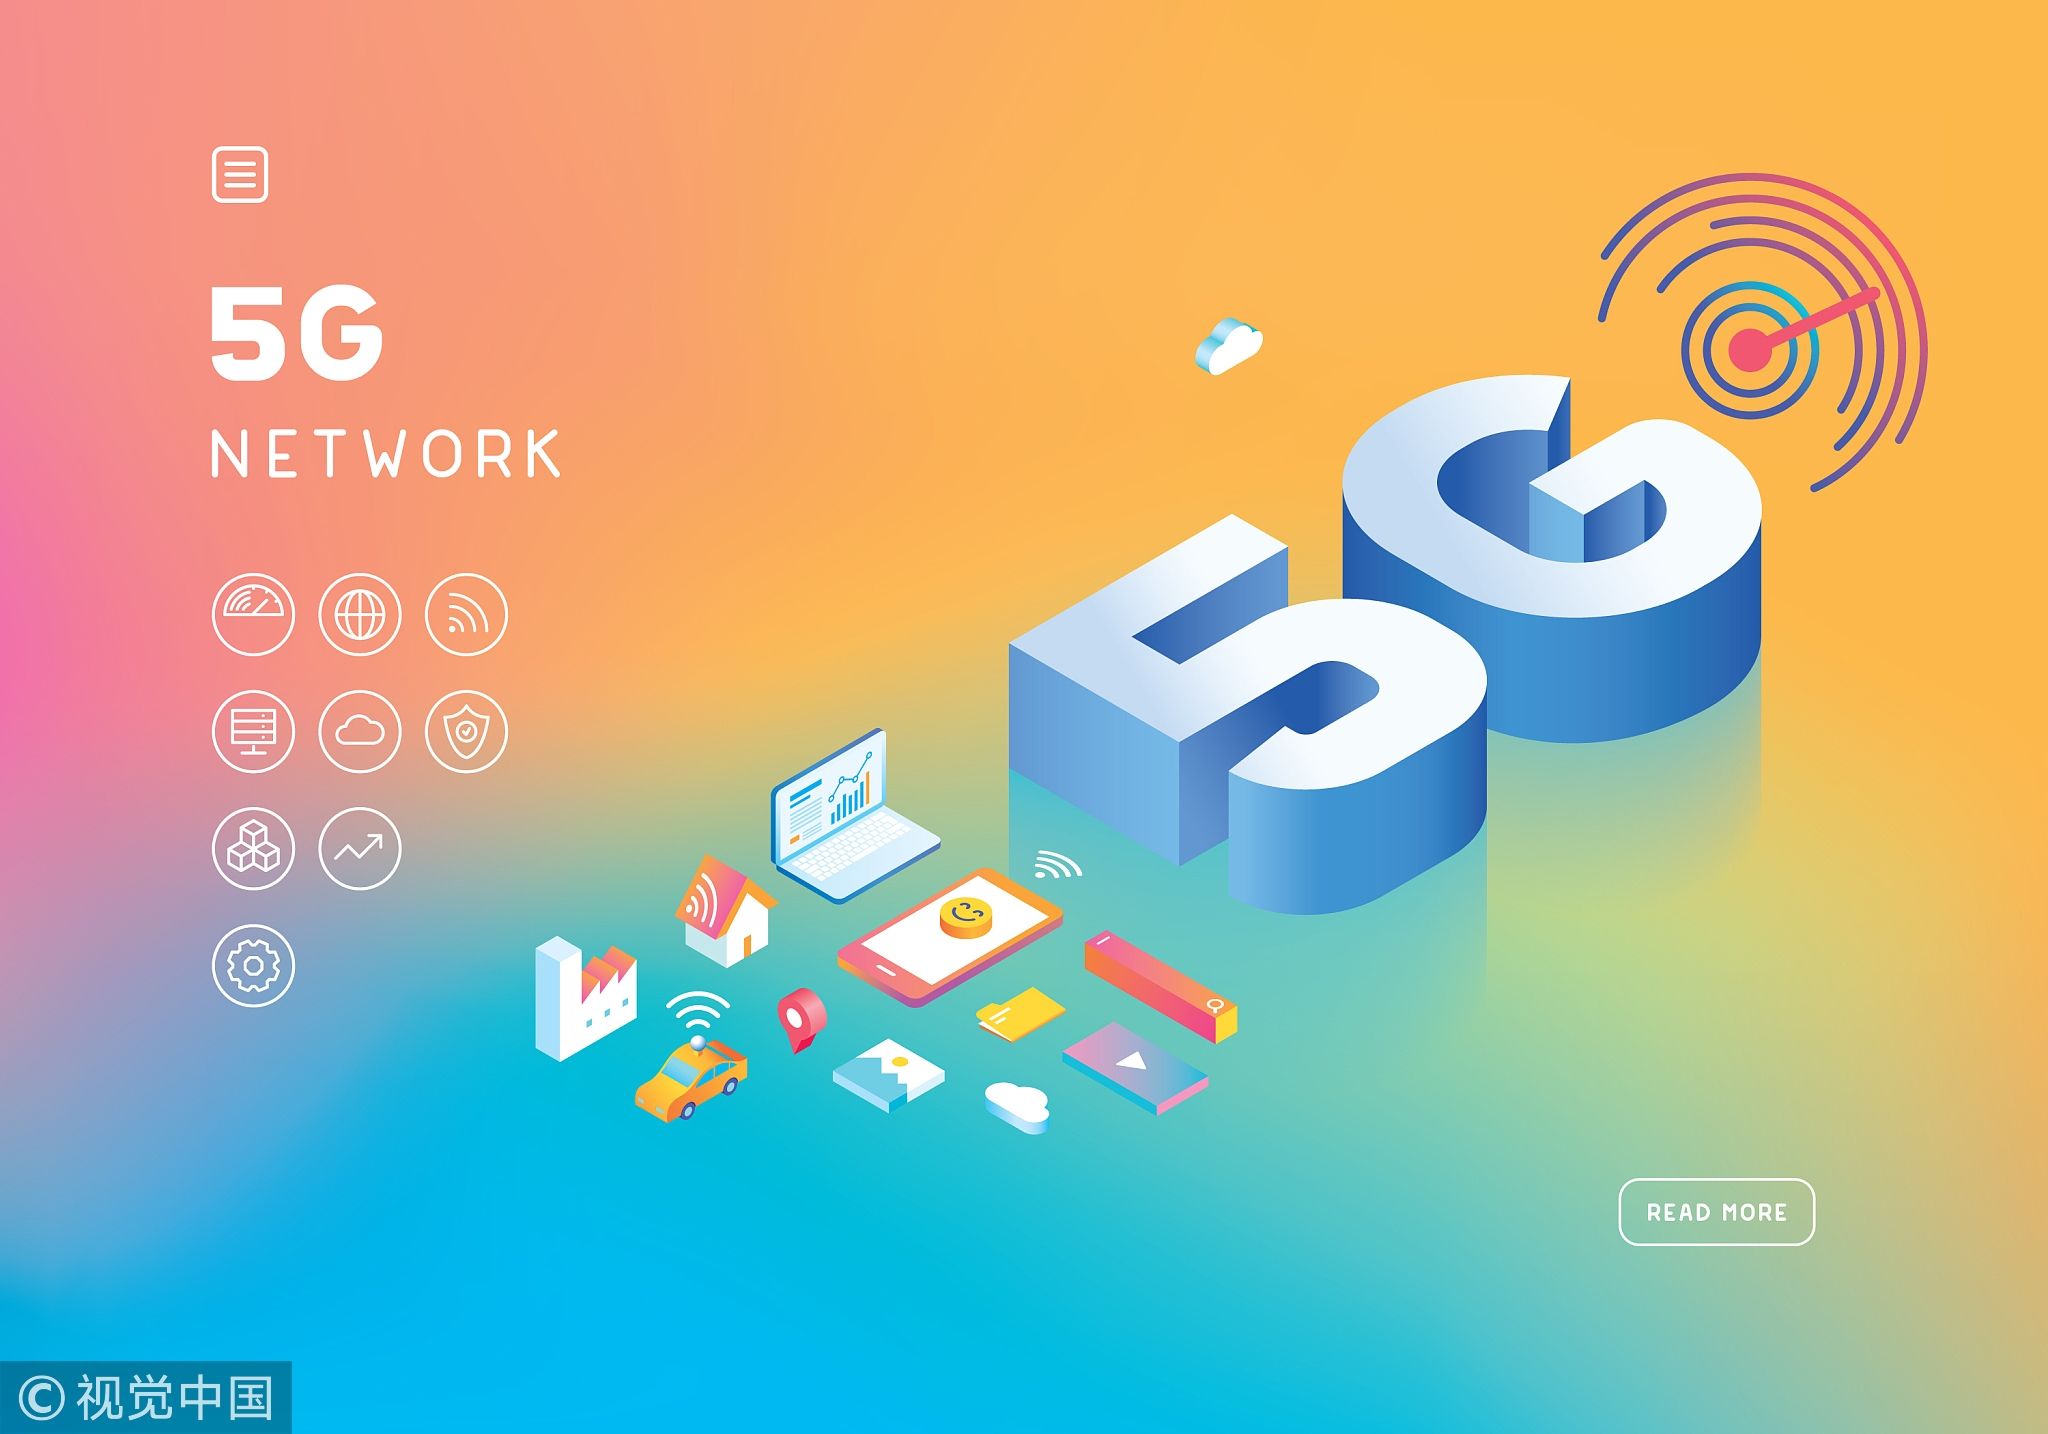 湖南移动5G网络助力科技进步，引领数字时代发展趋势  第5张